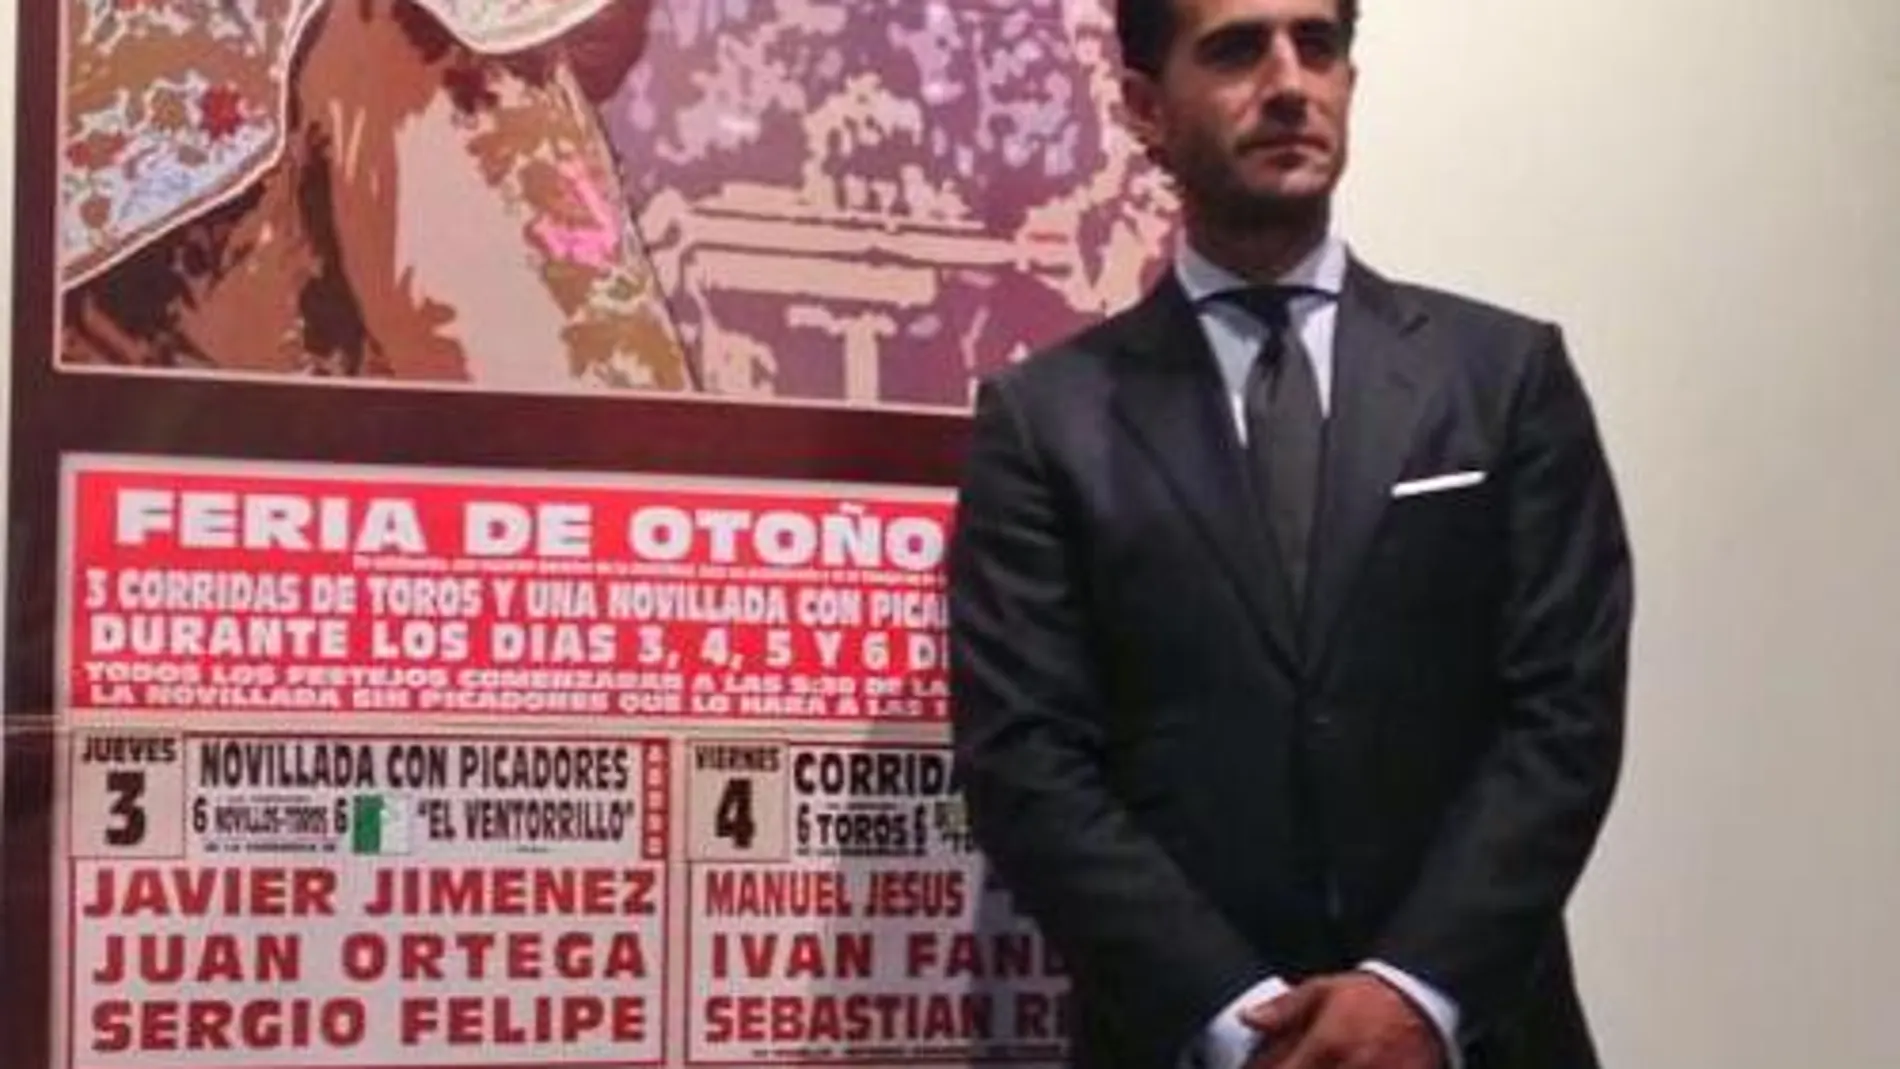 Iván Fandiño posa junto al cartel anunciador de la próxima Feria de Otoño